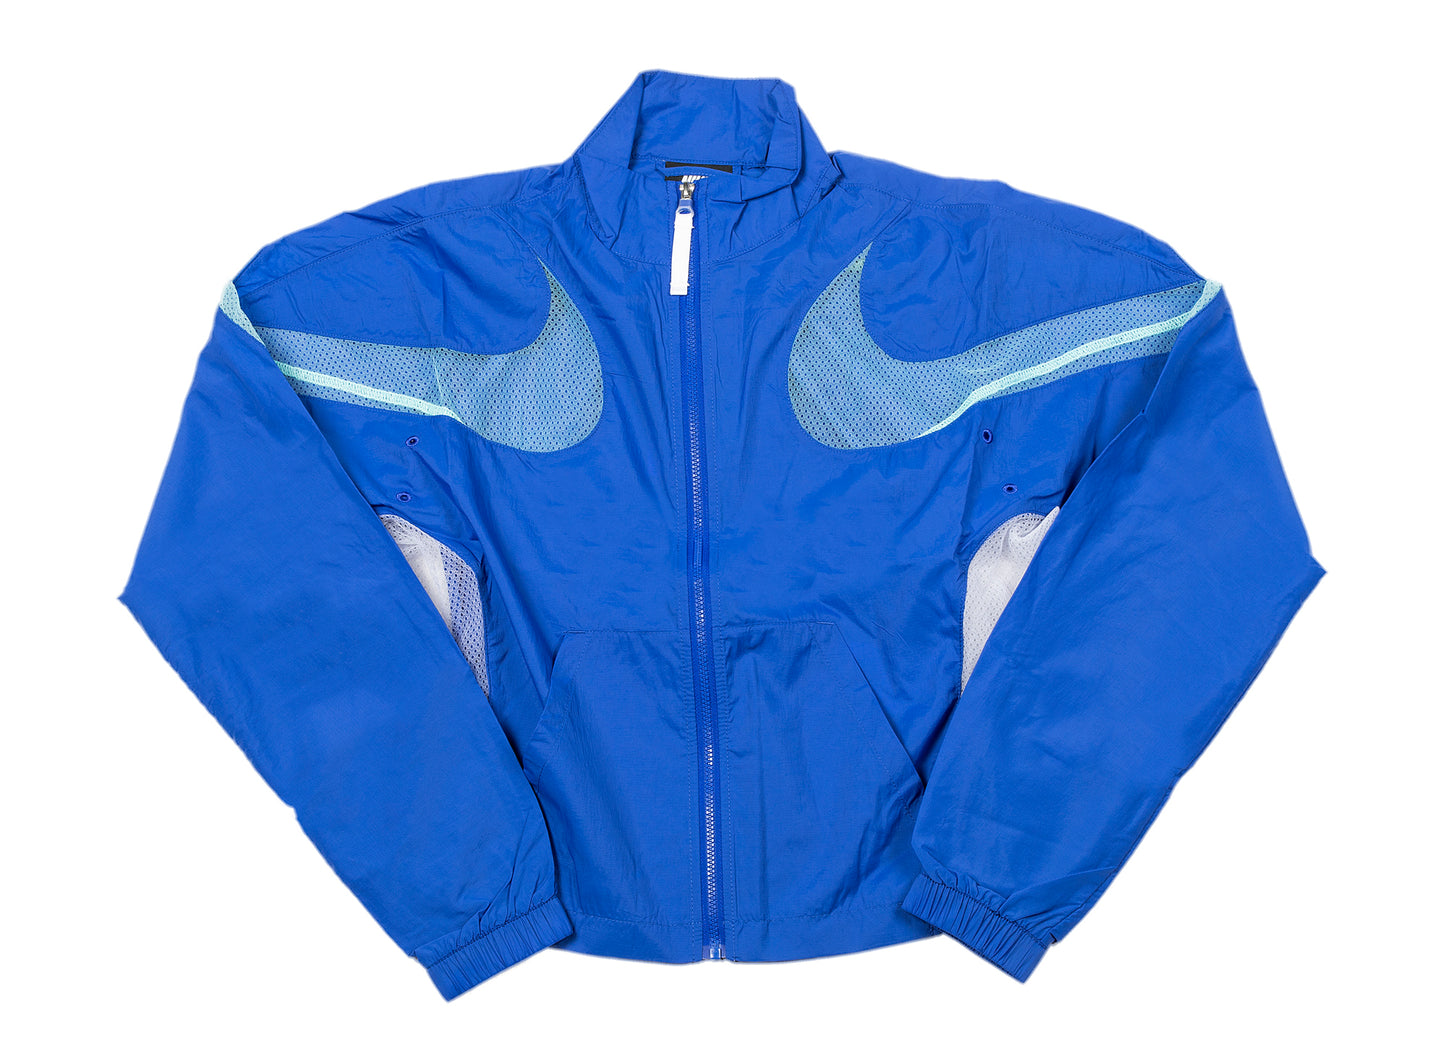 Women's Nike Sportswear Woven Air Jacket in Blue